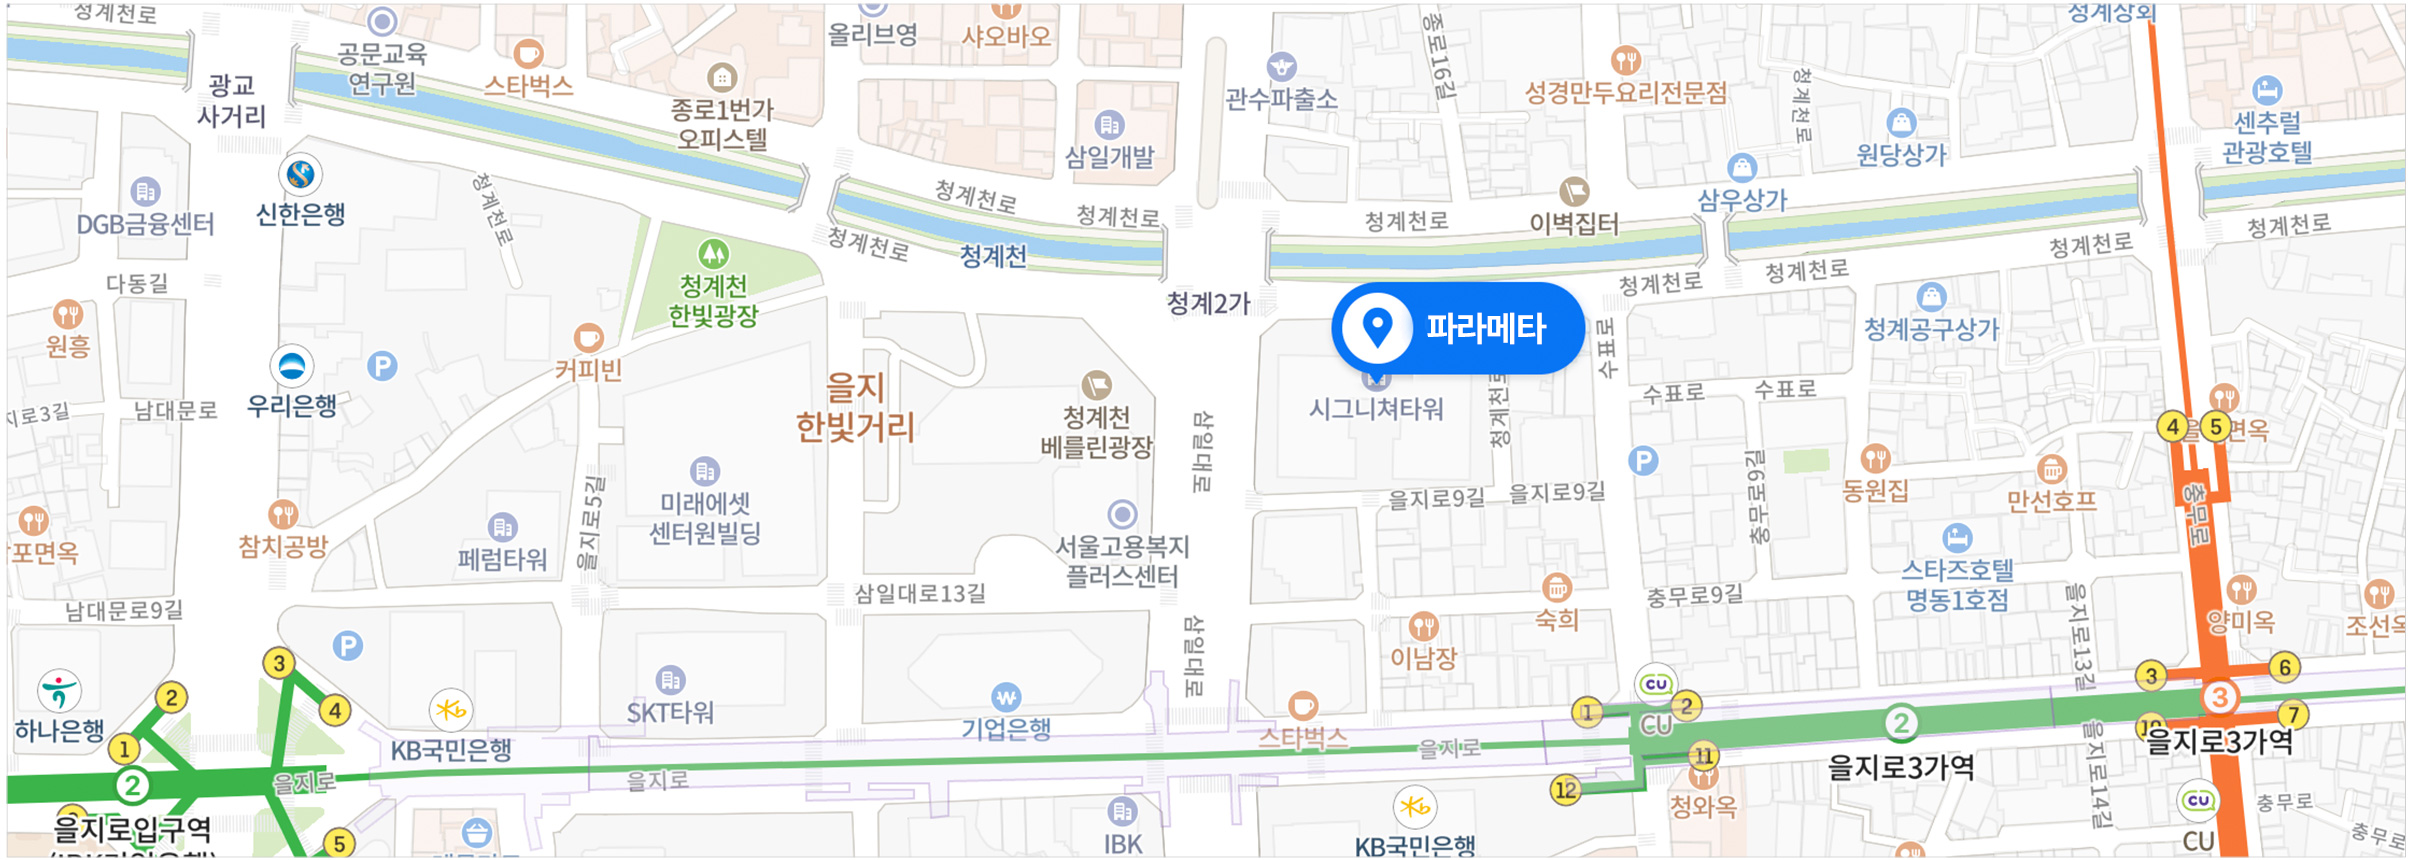 map-seoul-2x